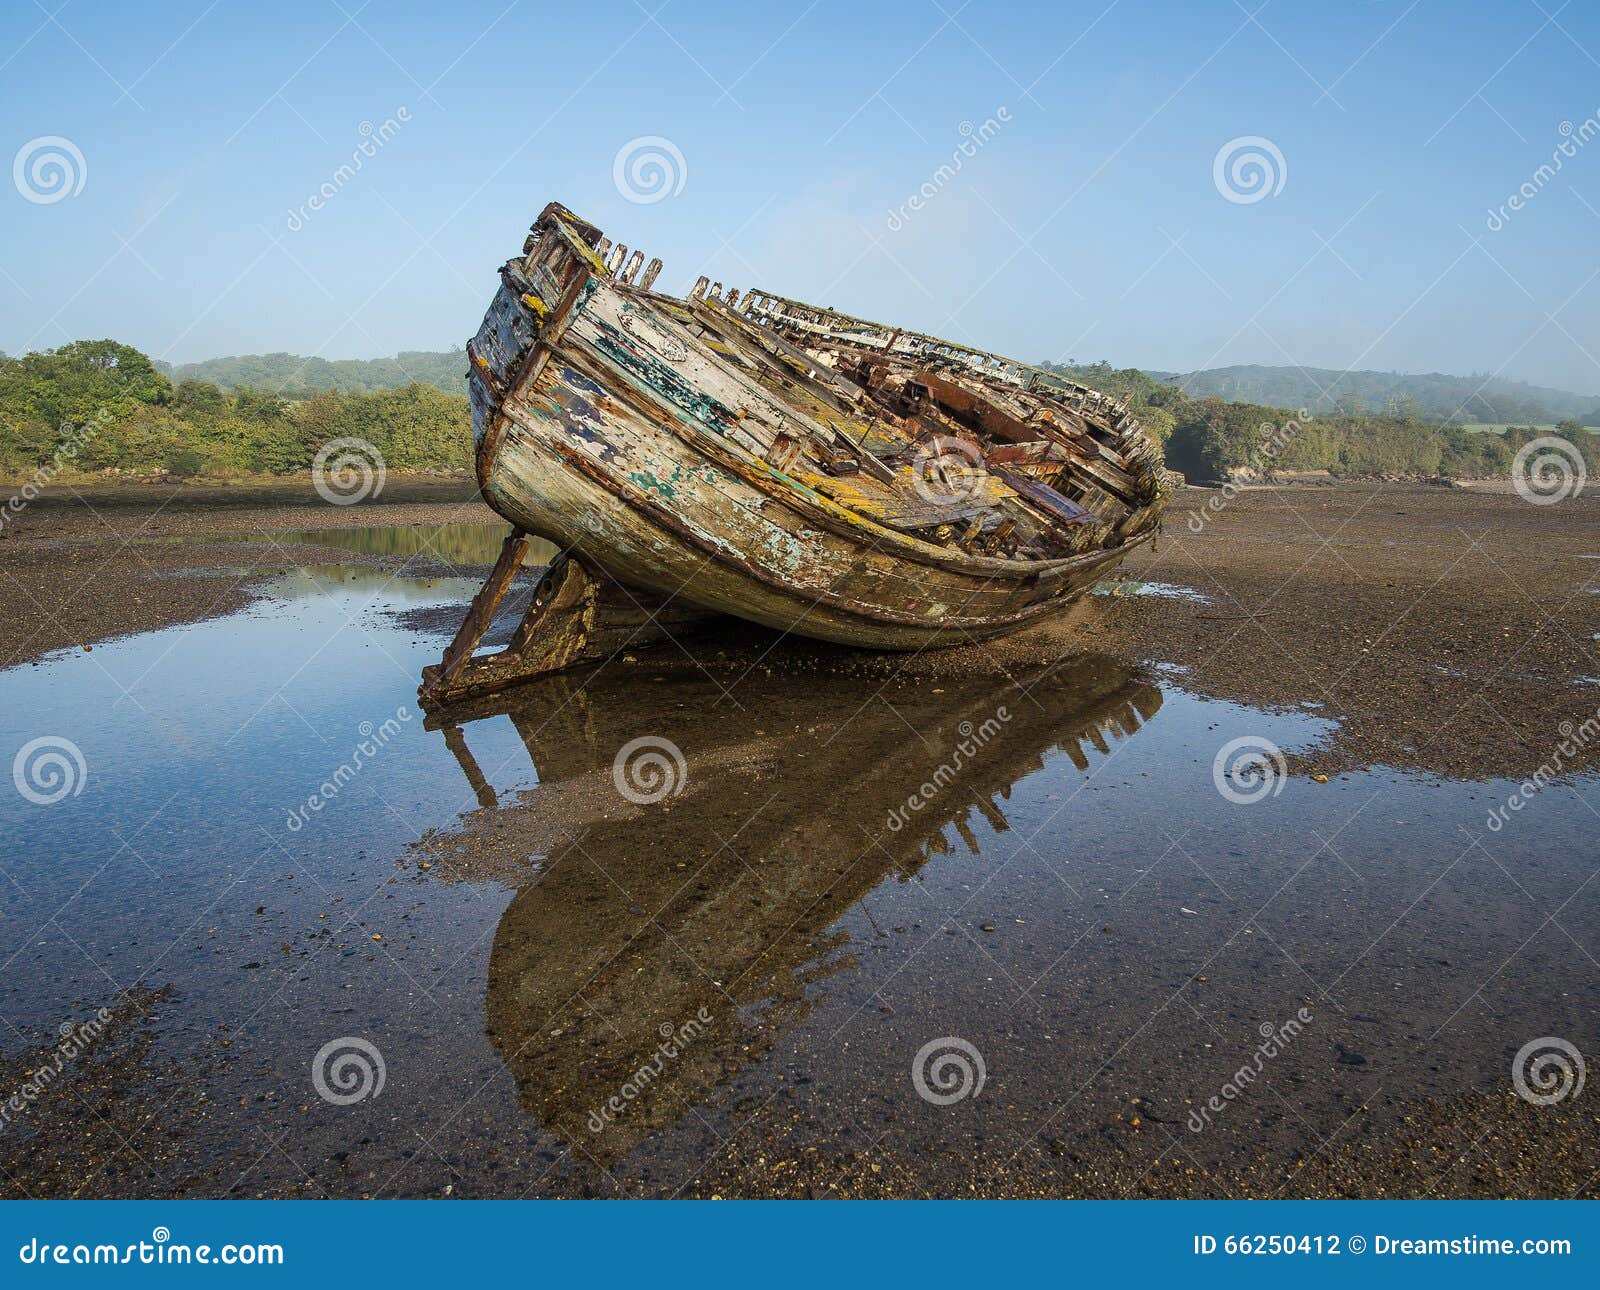 dulas estuary ship wreck